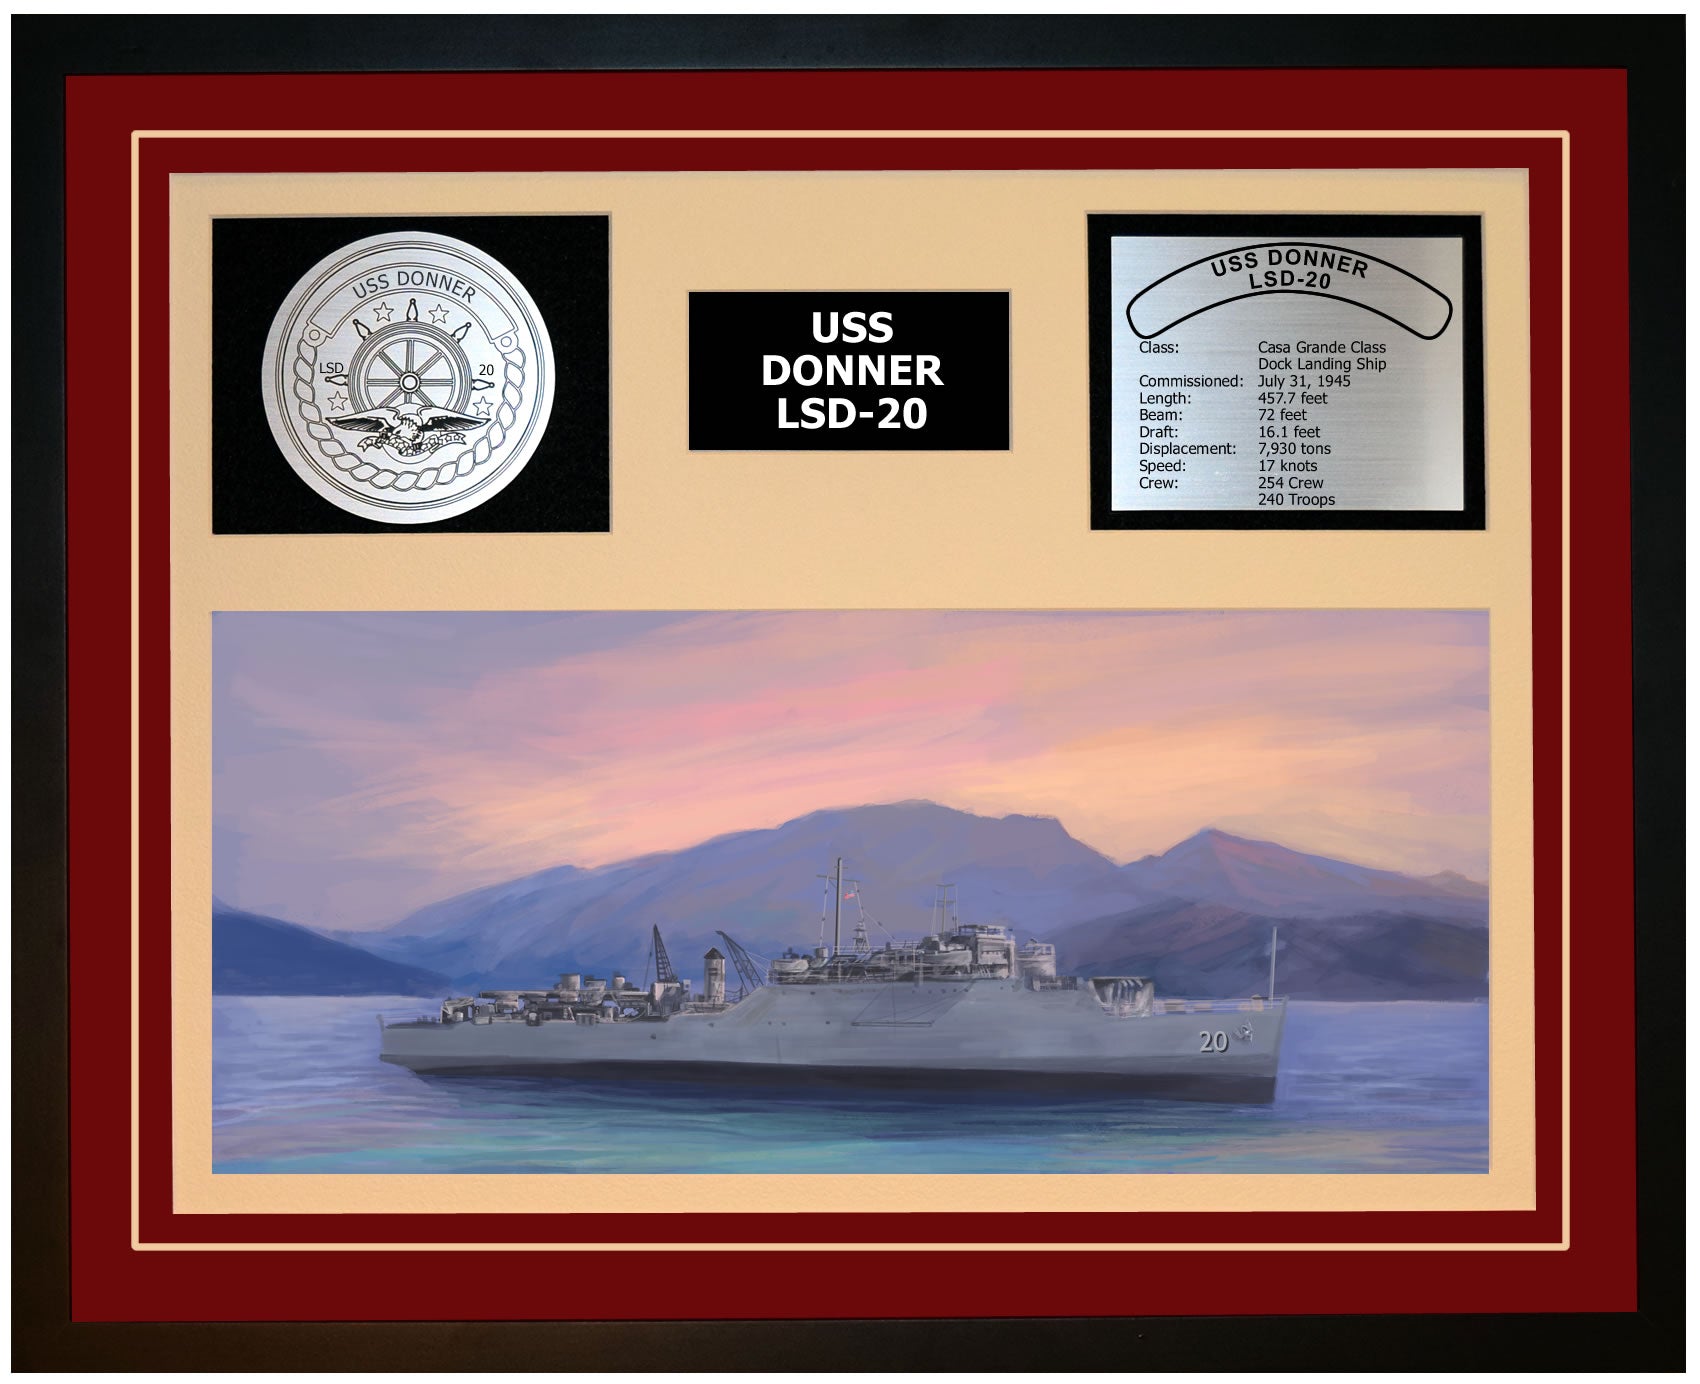 USS DONNER LSD-20 Framed Navy Ship Display Burgundy